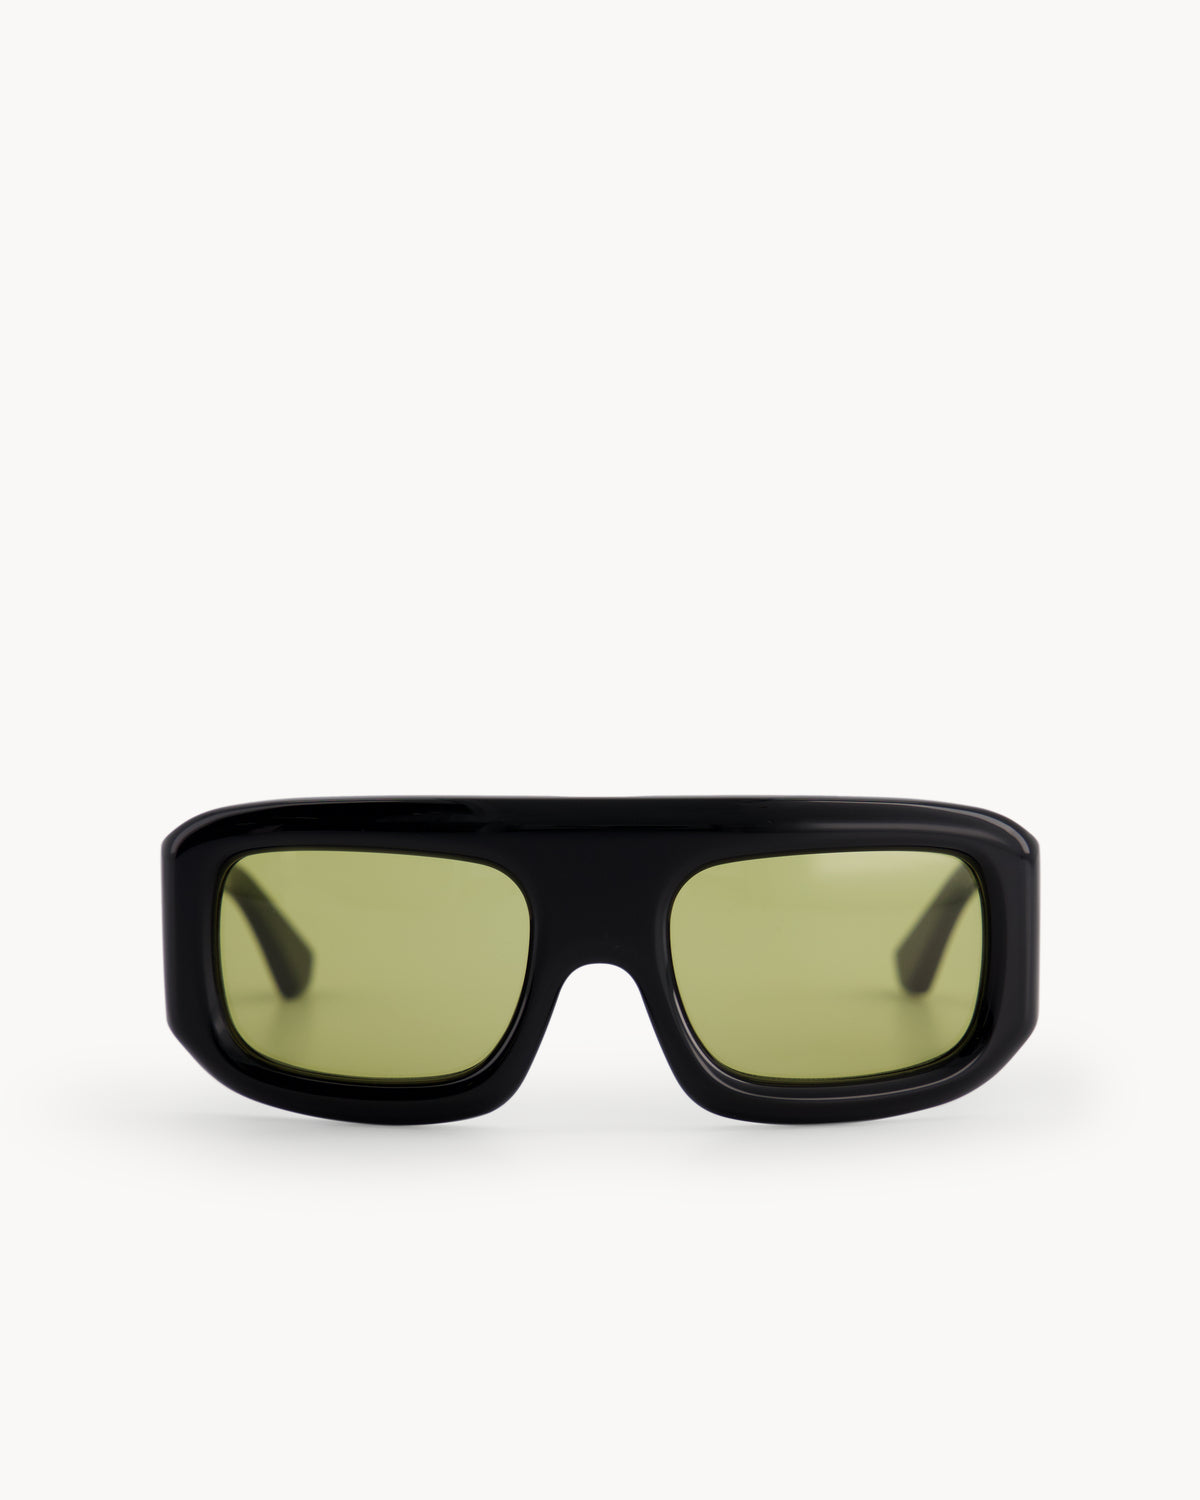 Port Tanger Mauretania Sunglasses in Black Acetate and Warm Olive Lenses 1